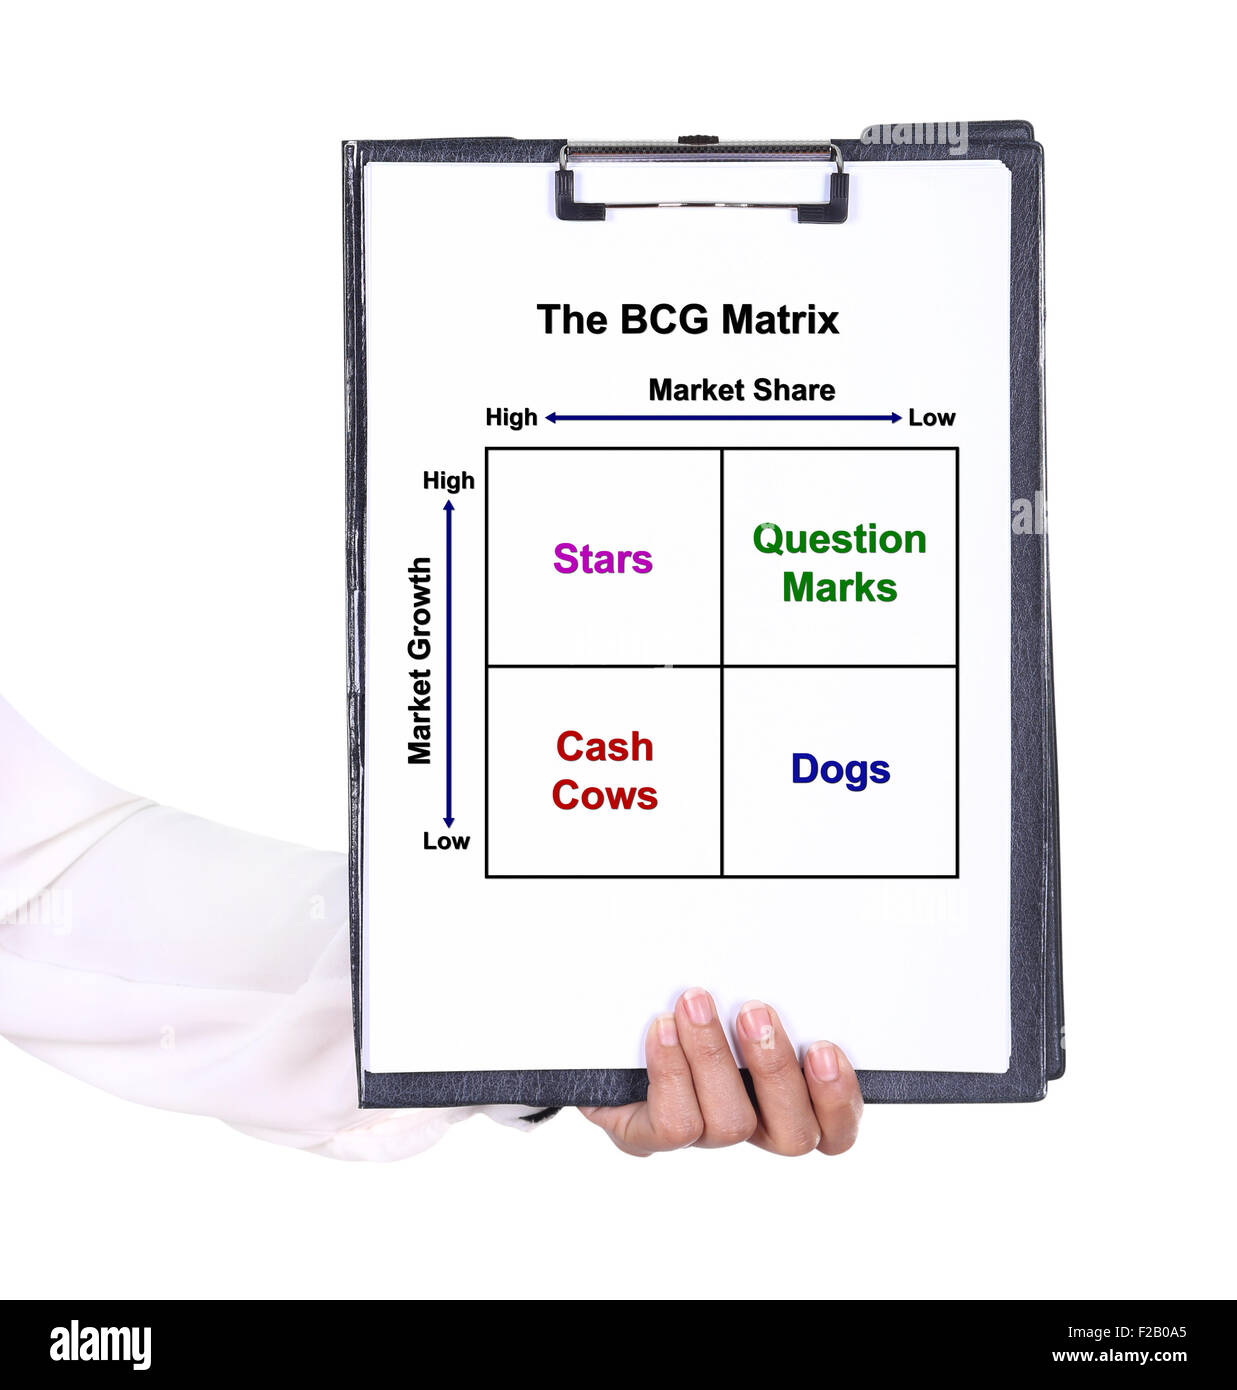 Tenir la main d'un presse-papiers avec la carte de la matrice BCG (concept de commercialisation) Banque D'Images